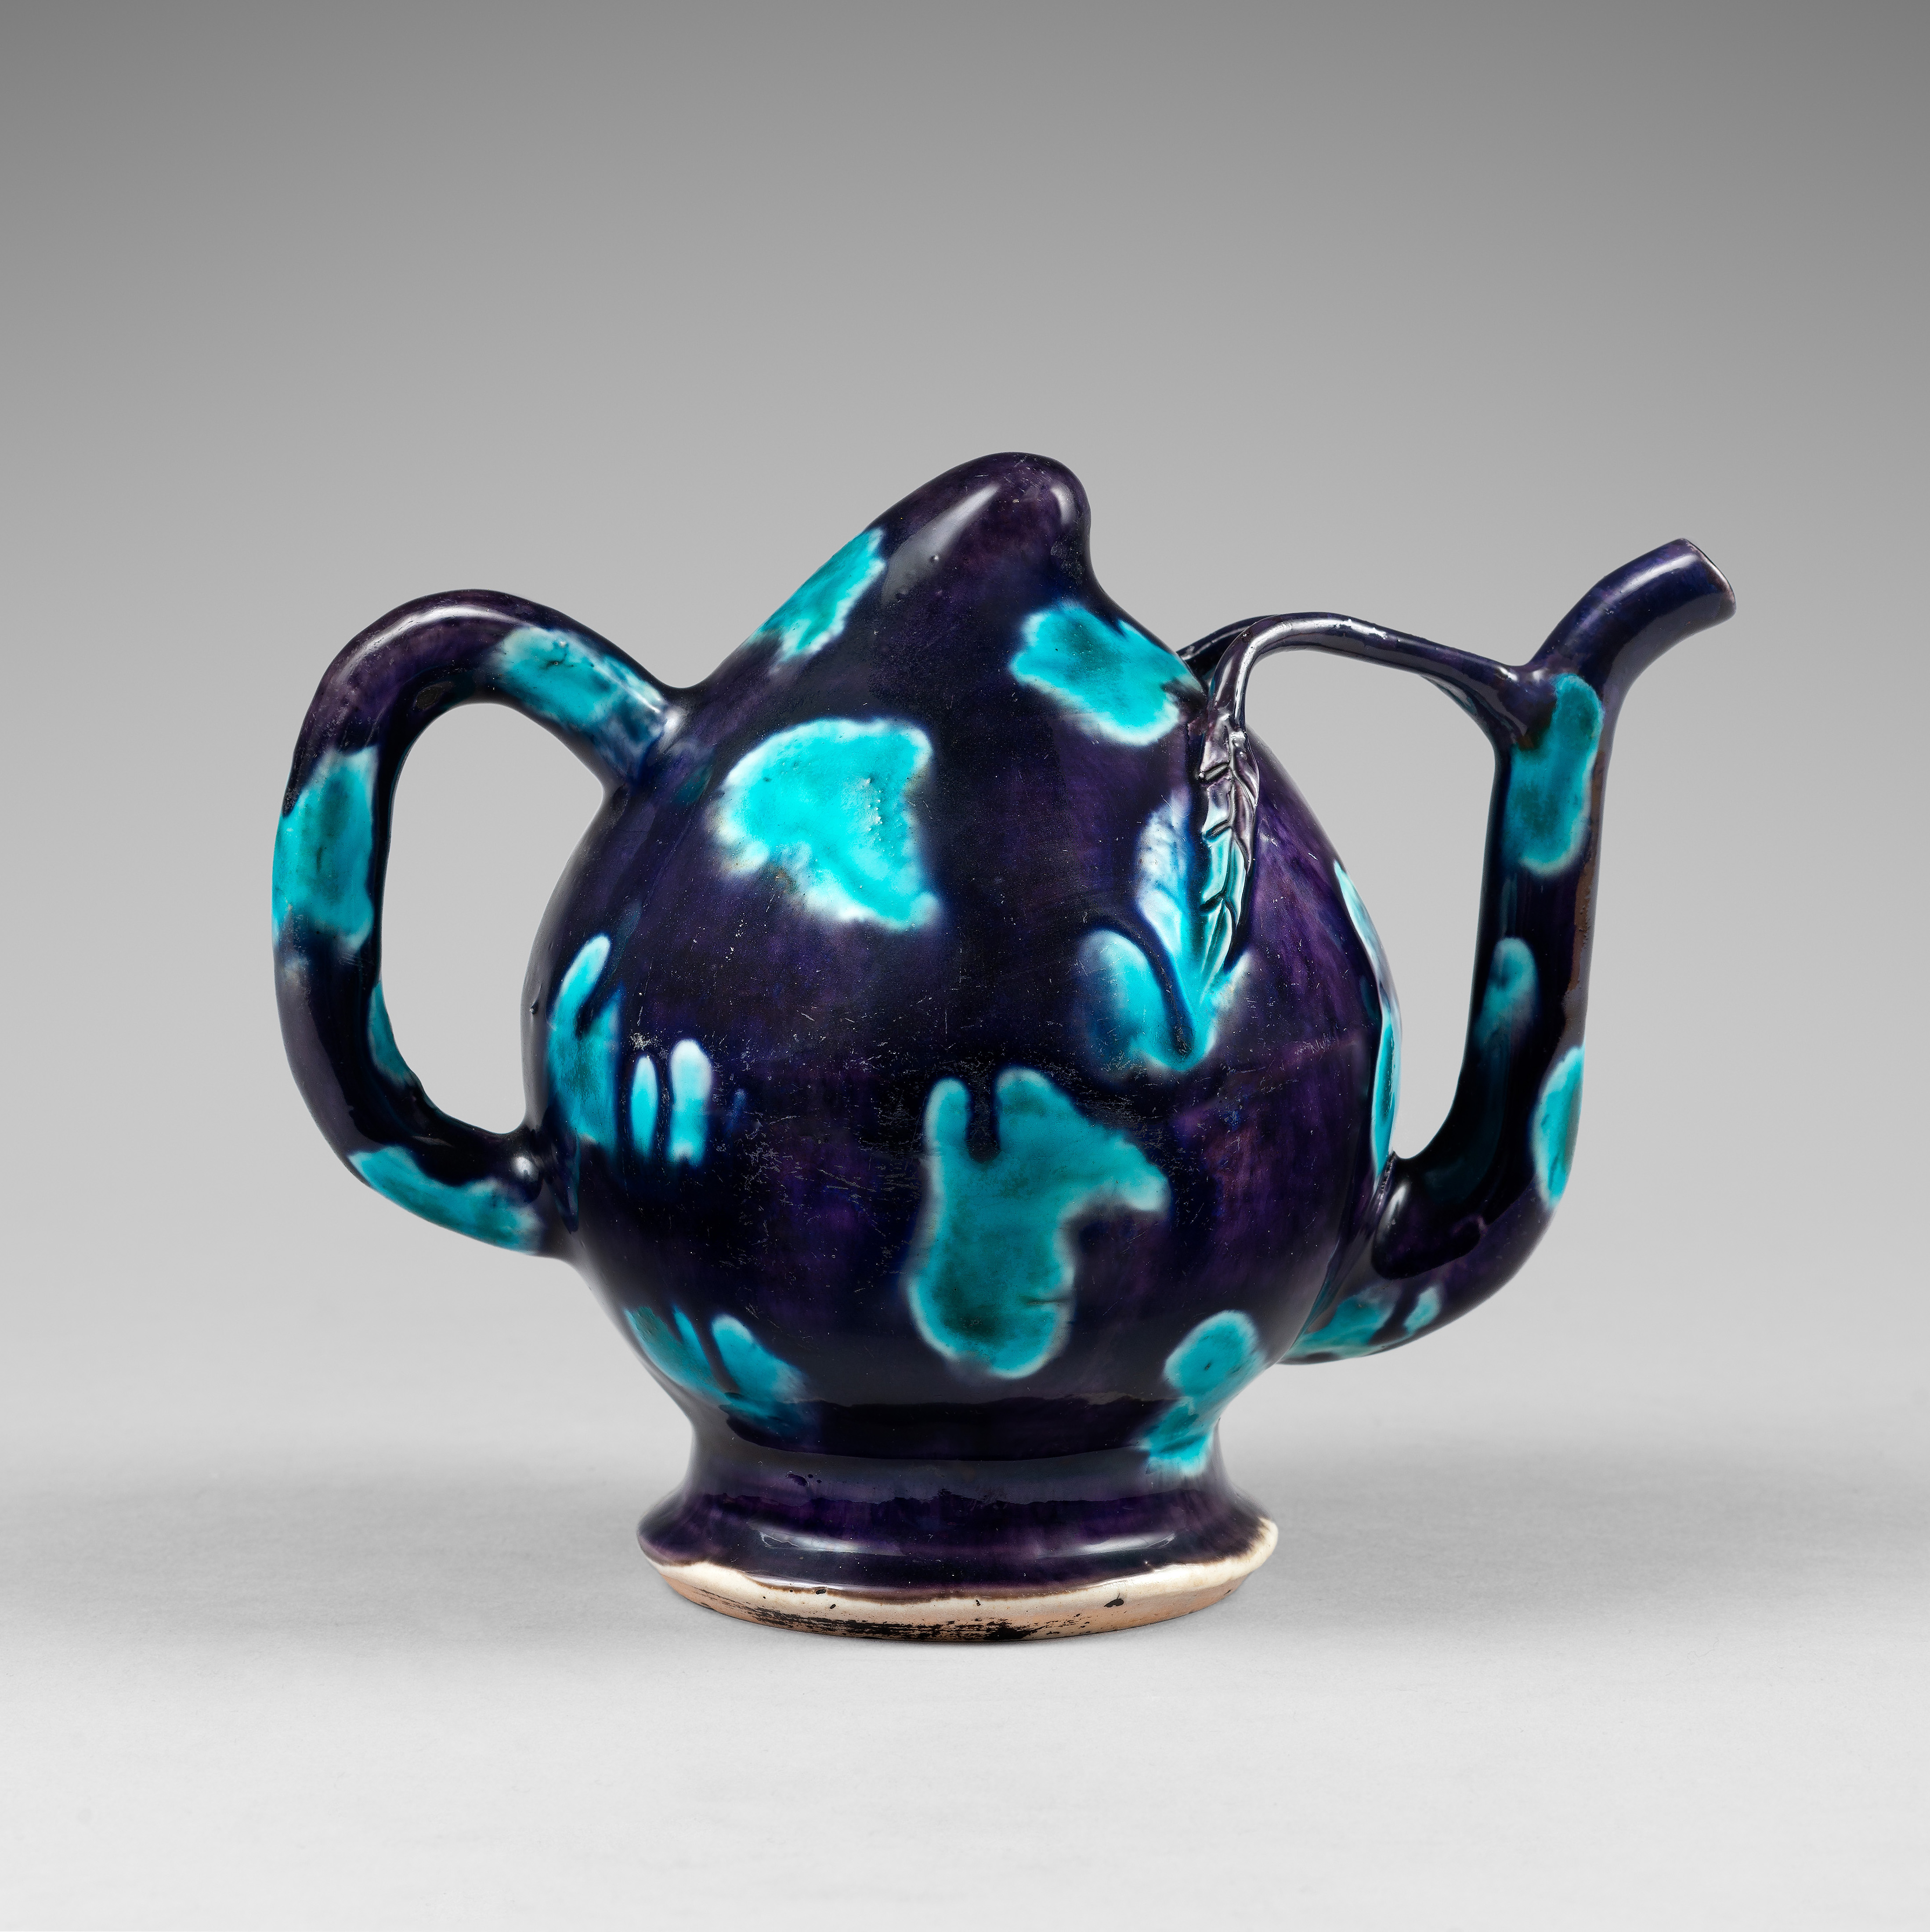 Porcelain (biscuit) Kangxi period (1662-1722), China